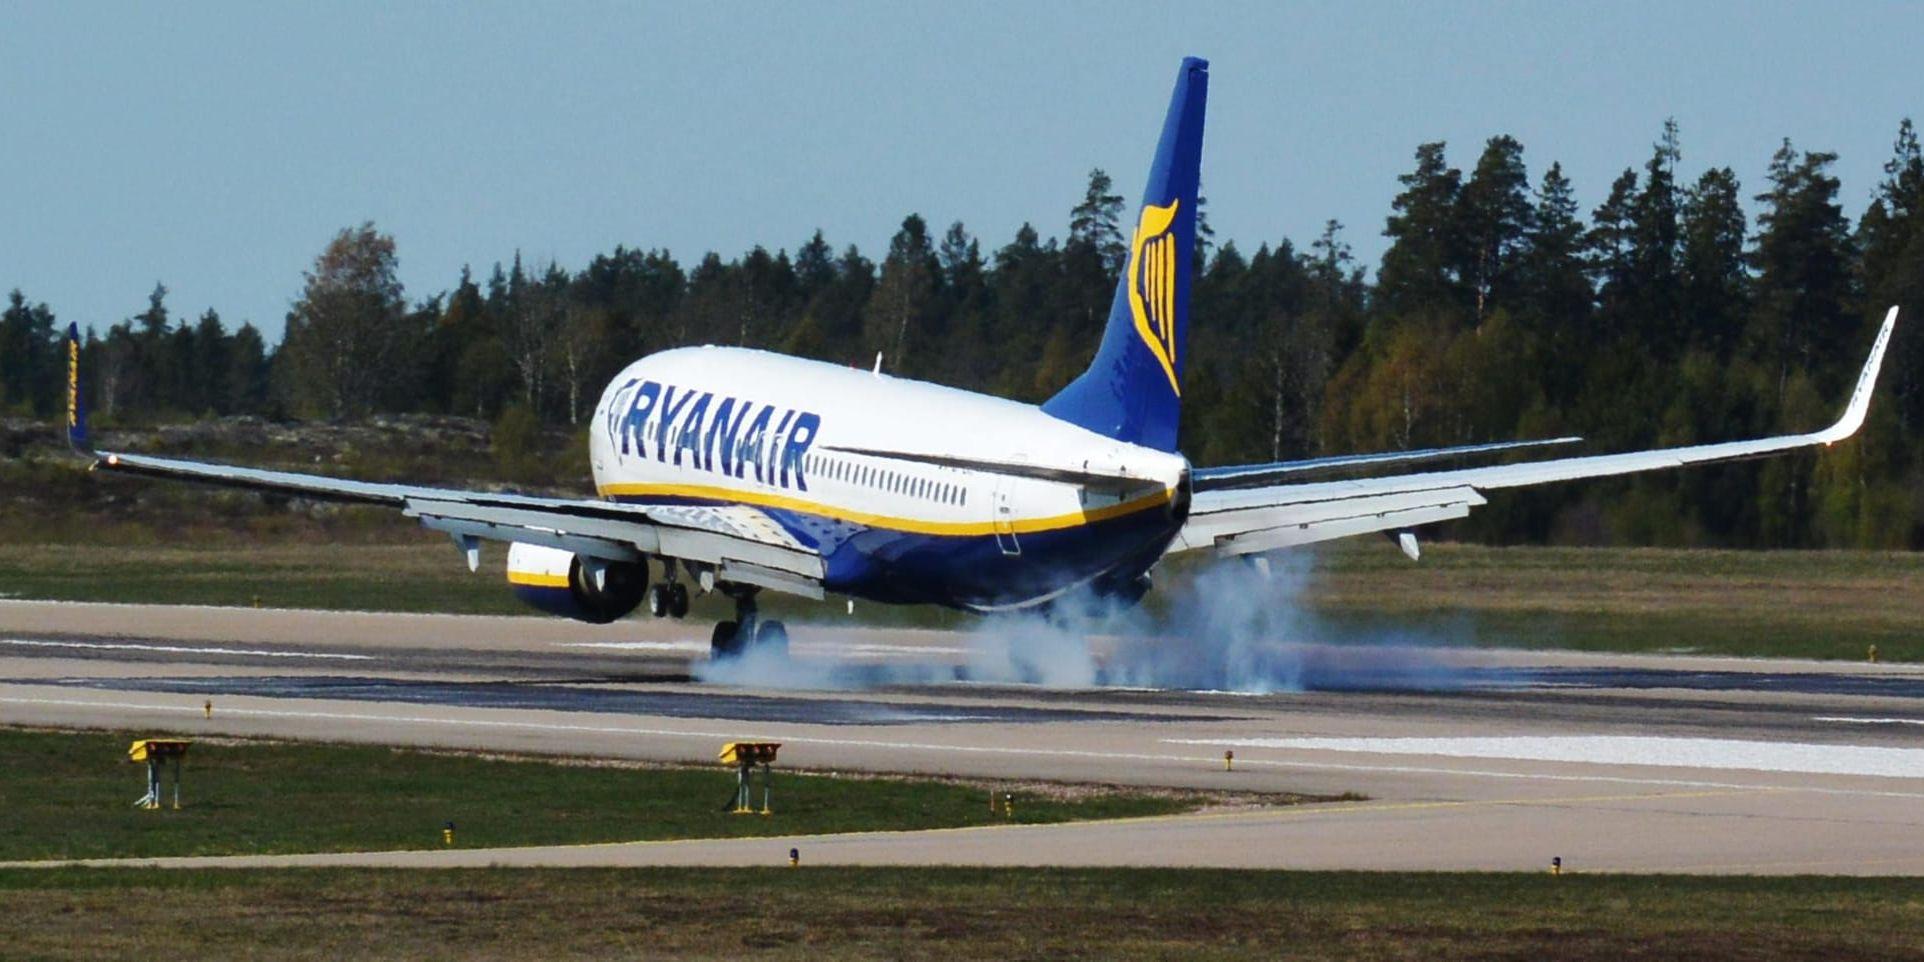 På fredag stannar de flesta av Ryanairs plan på marken på Skavsta flygplats. Arkivbild.